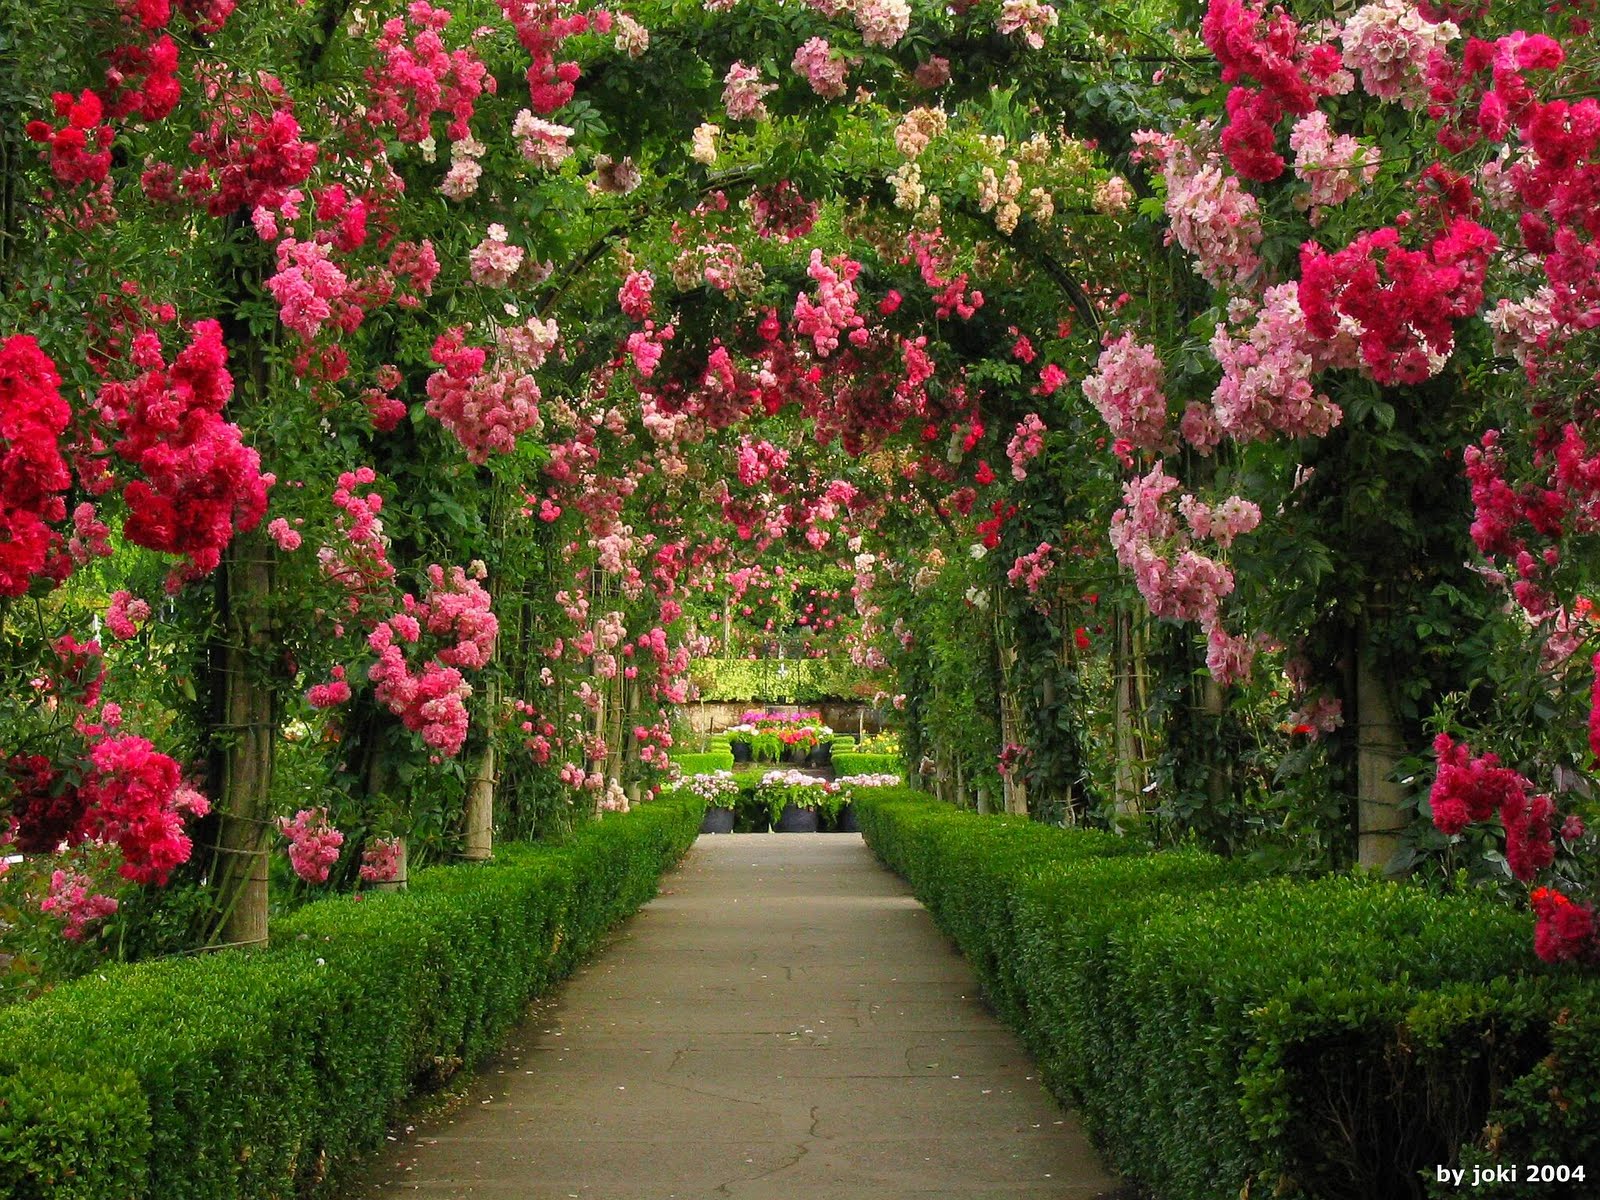 Завантажити шпалери Рожева Квітка на телефон безкоштовно